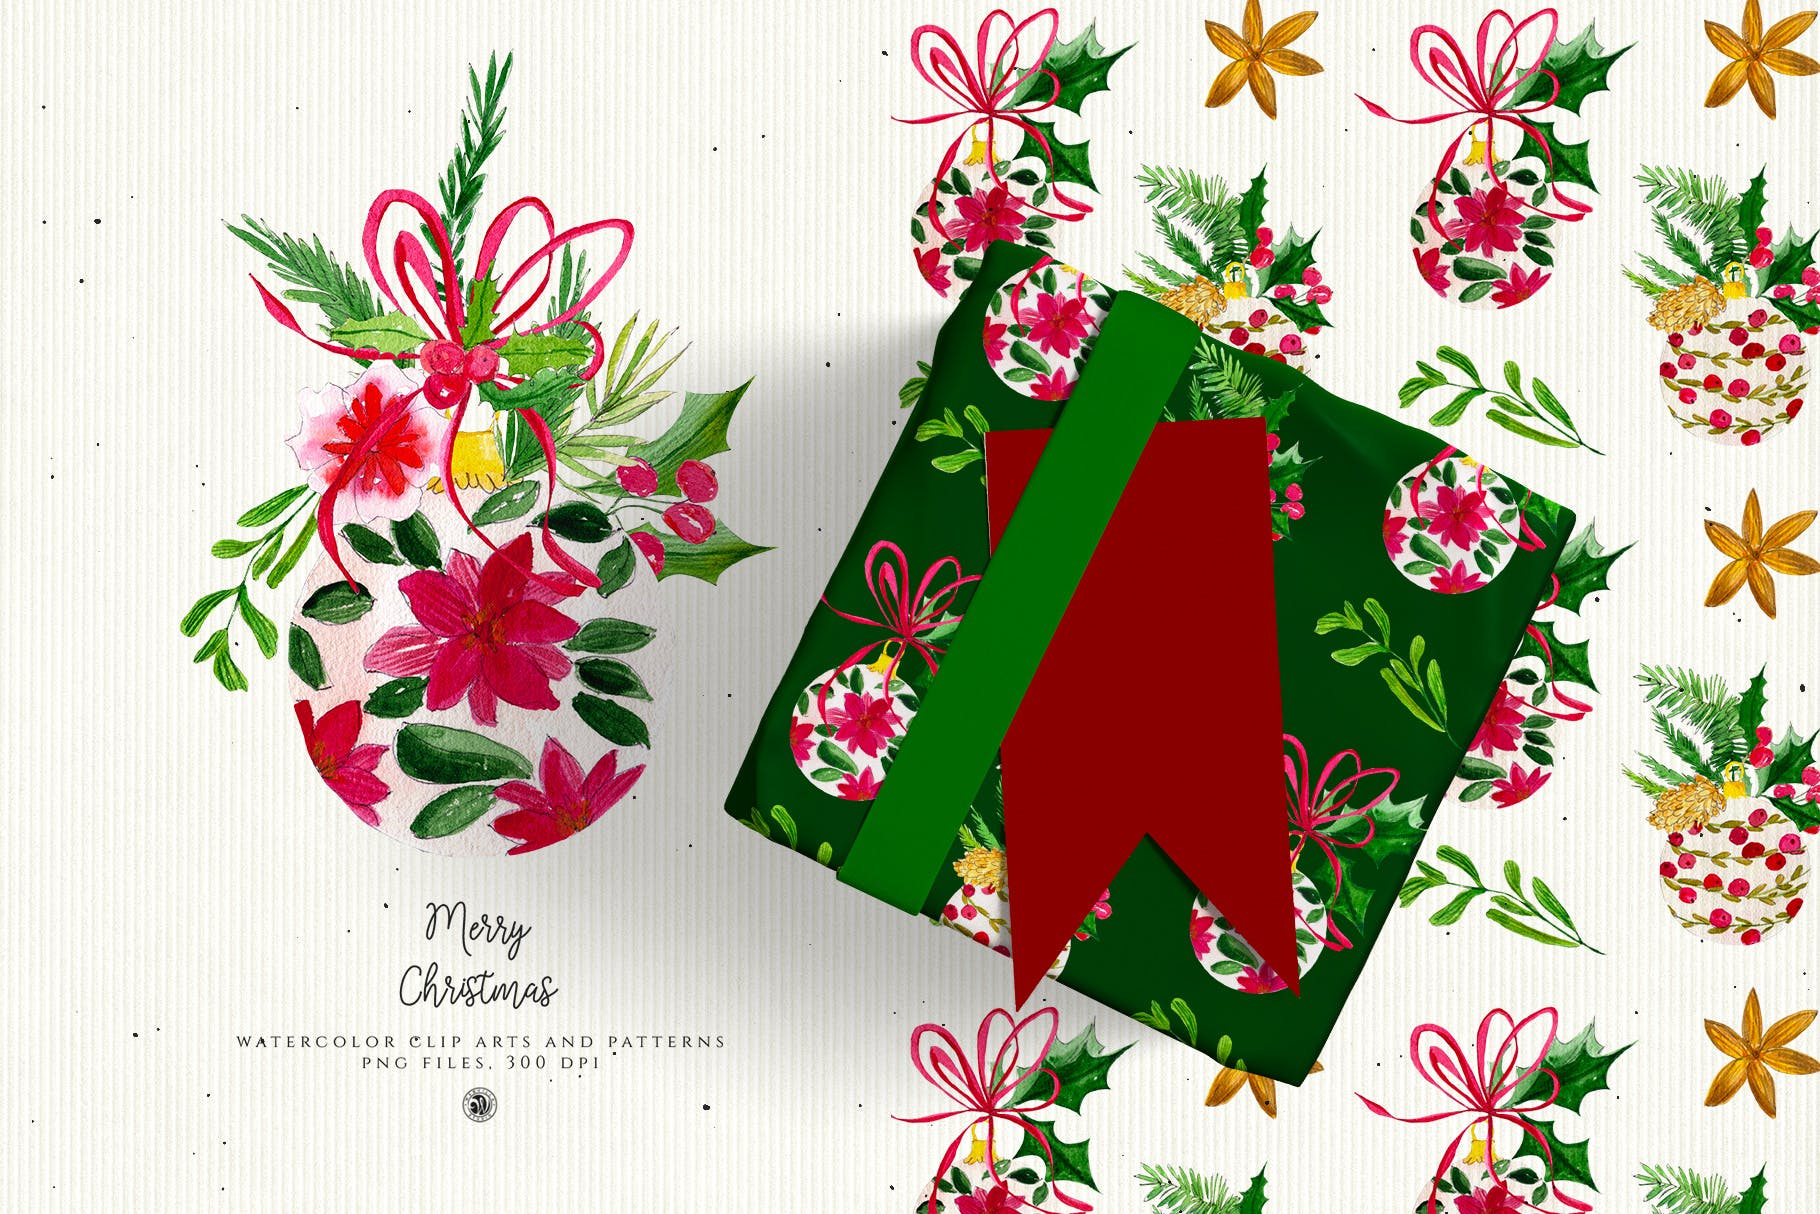 水彩手绘圣诞装饰元素PNG高清图片素材 Christmas Decorations插图(2)